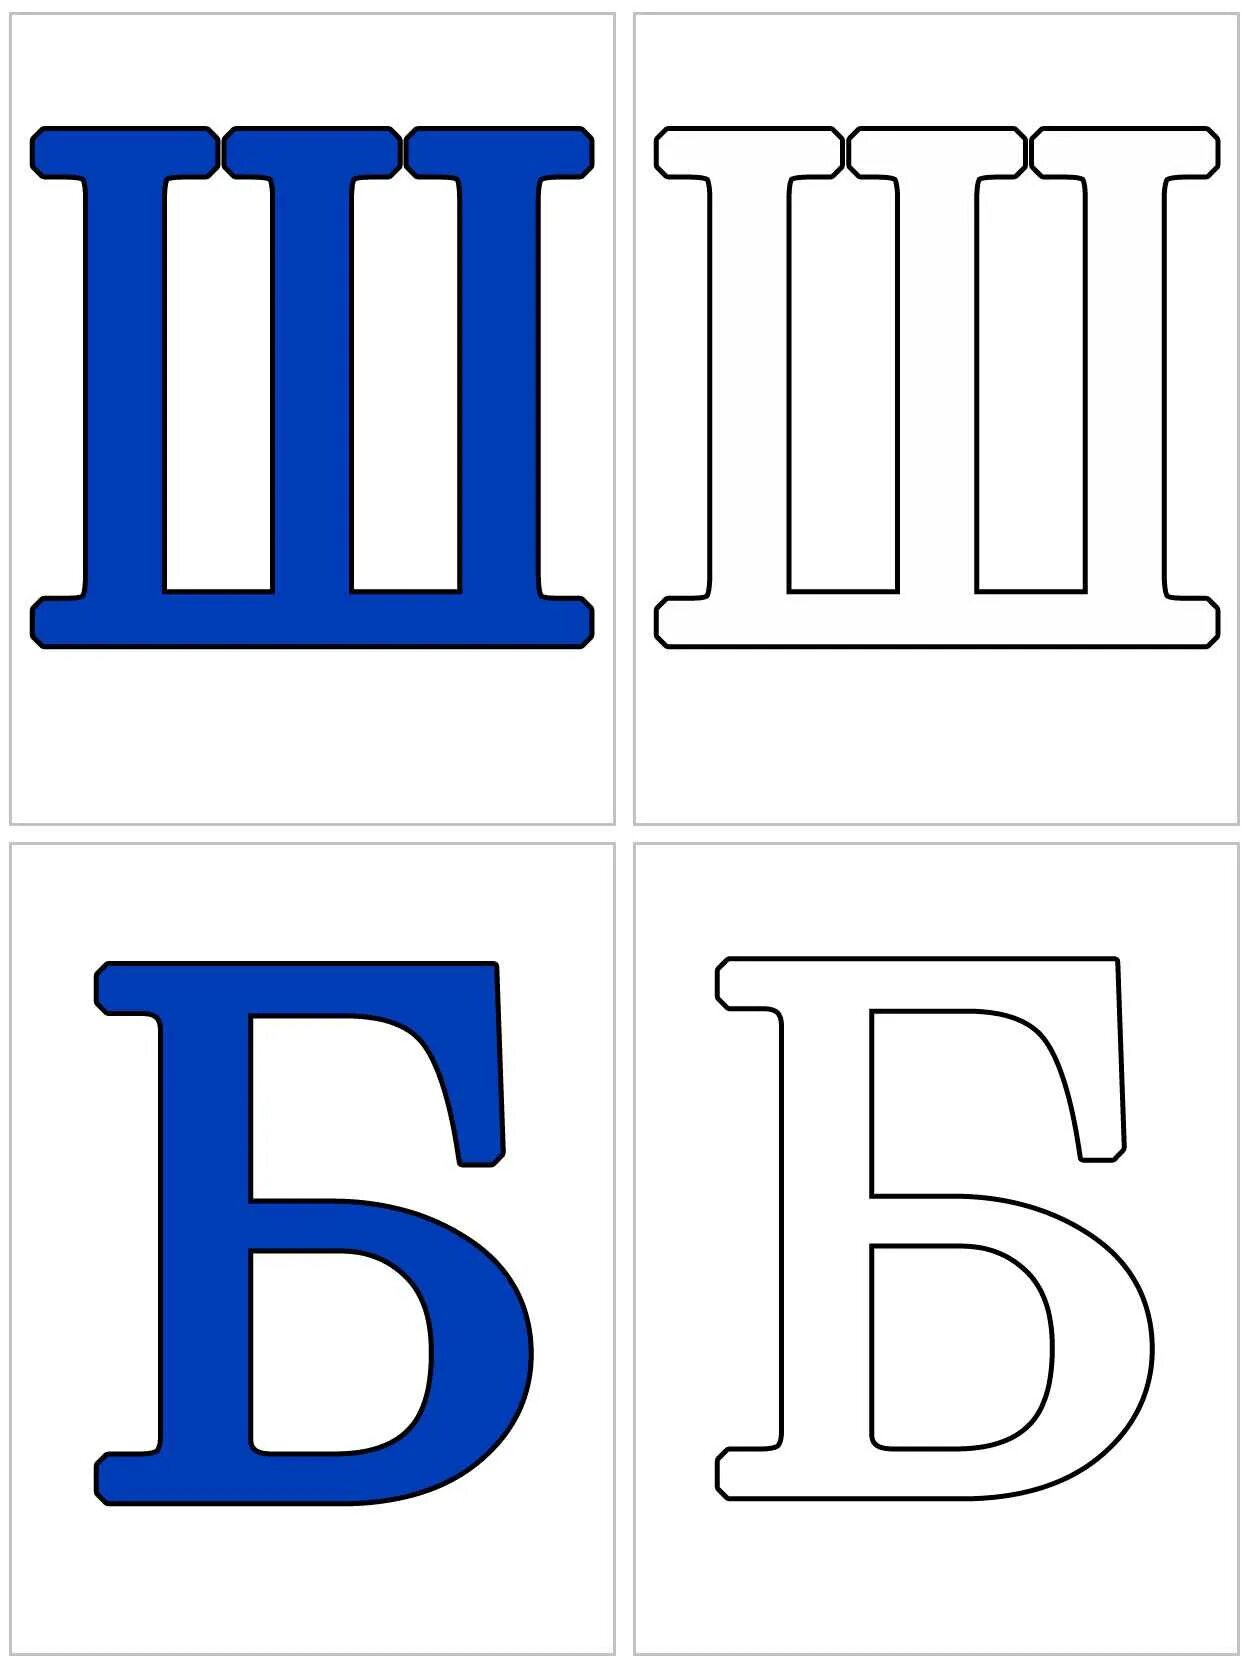 Распечатать алфавит по буквам формат а4. Алфавит и буквы. Карточки с буквами. Буквы алфавита для распечатки. Буквы алфавита для распечатывания.